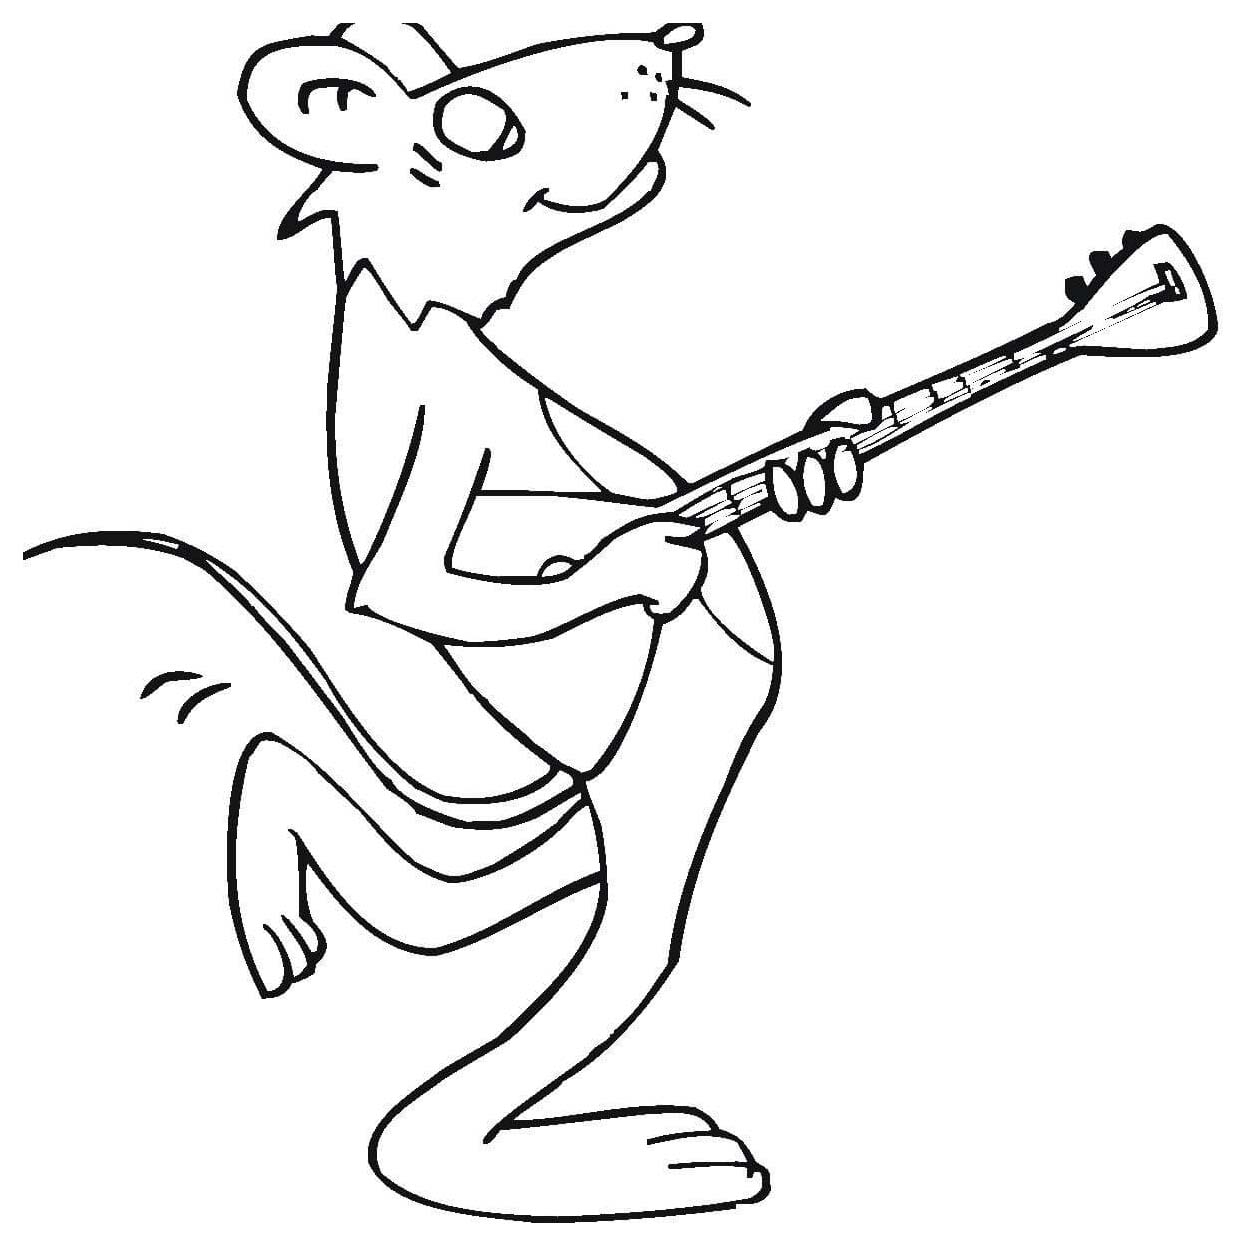 Мышонок с гитарой раскраска